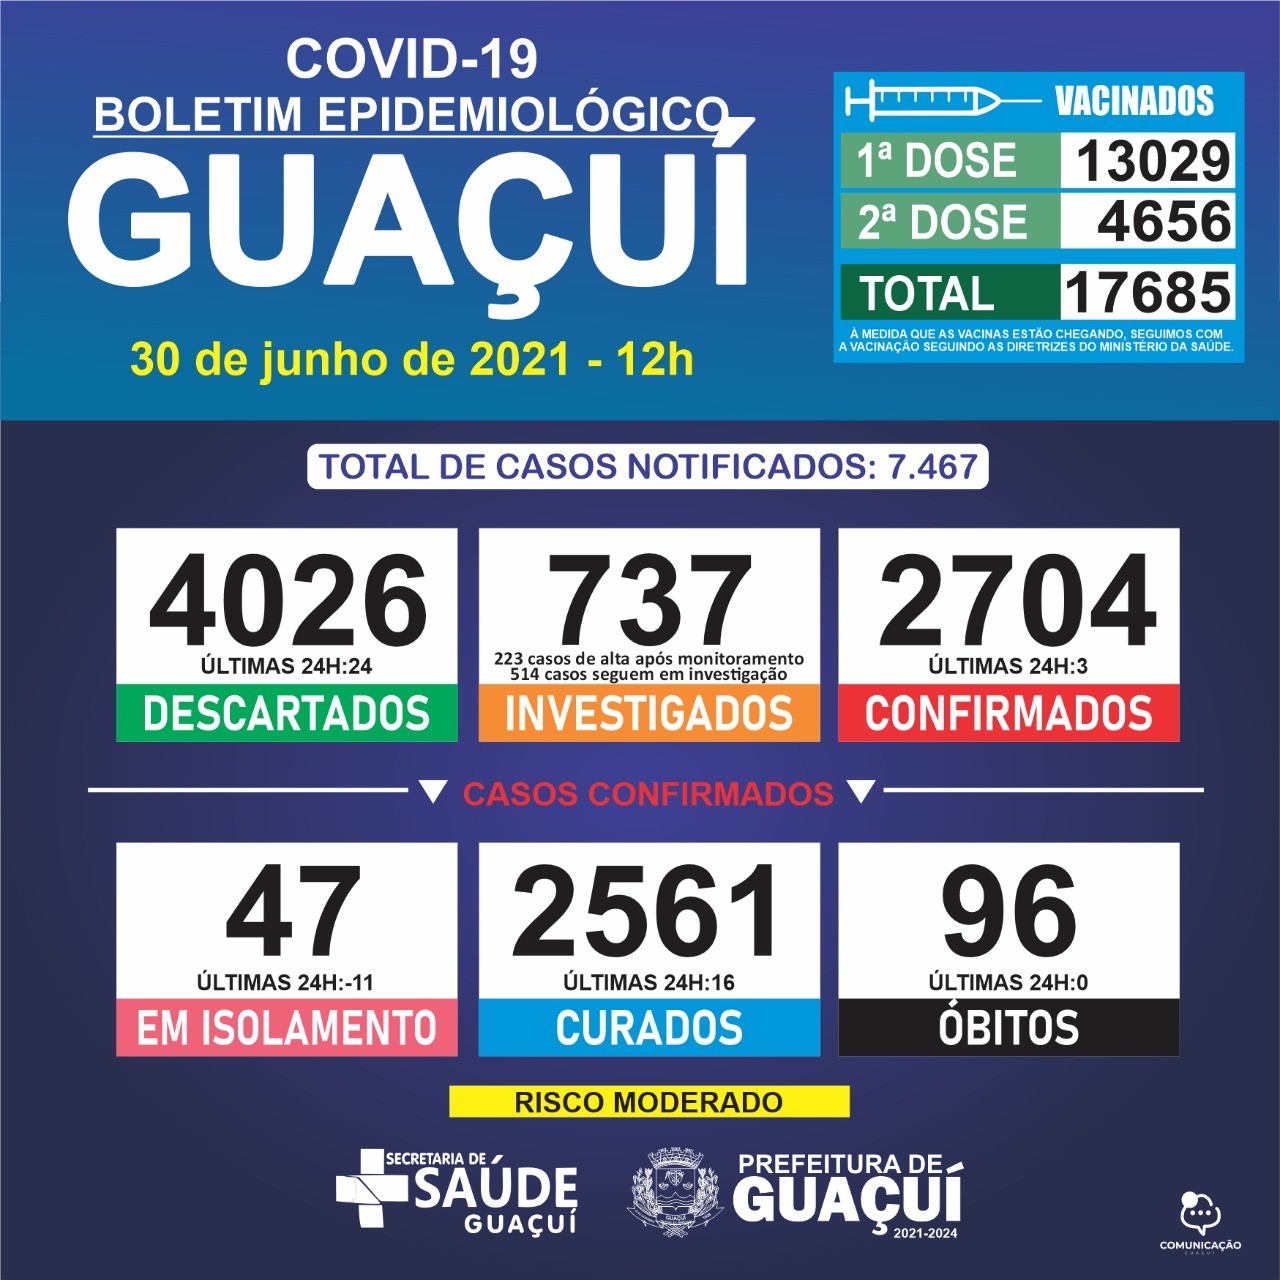 Boletim Epidemiológico 30/06/21: Guaçuí registra 3 casos confirmados e 16 curados nas últimas 24 horas